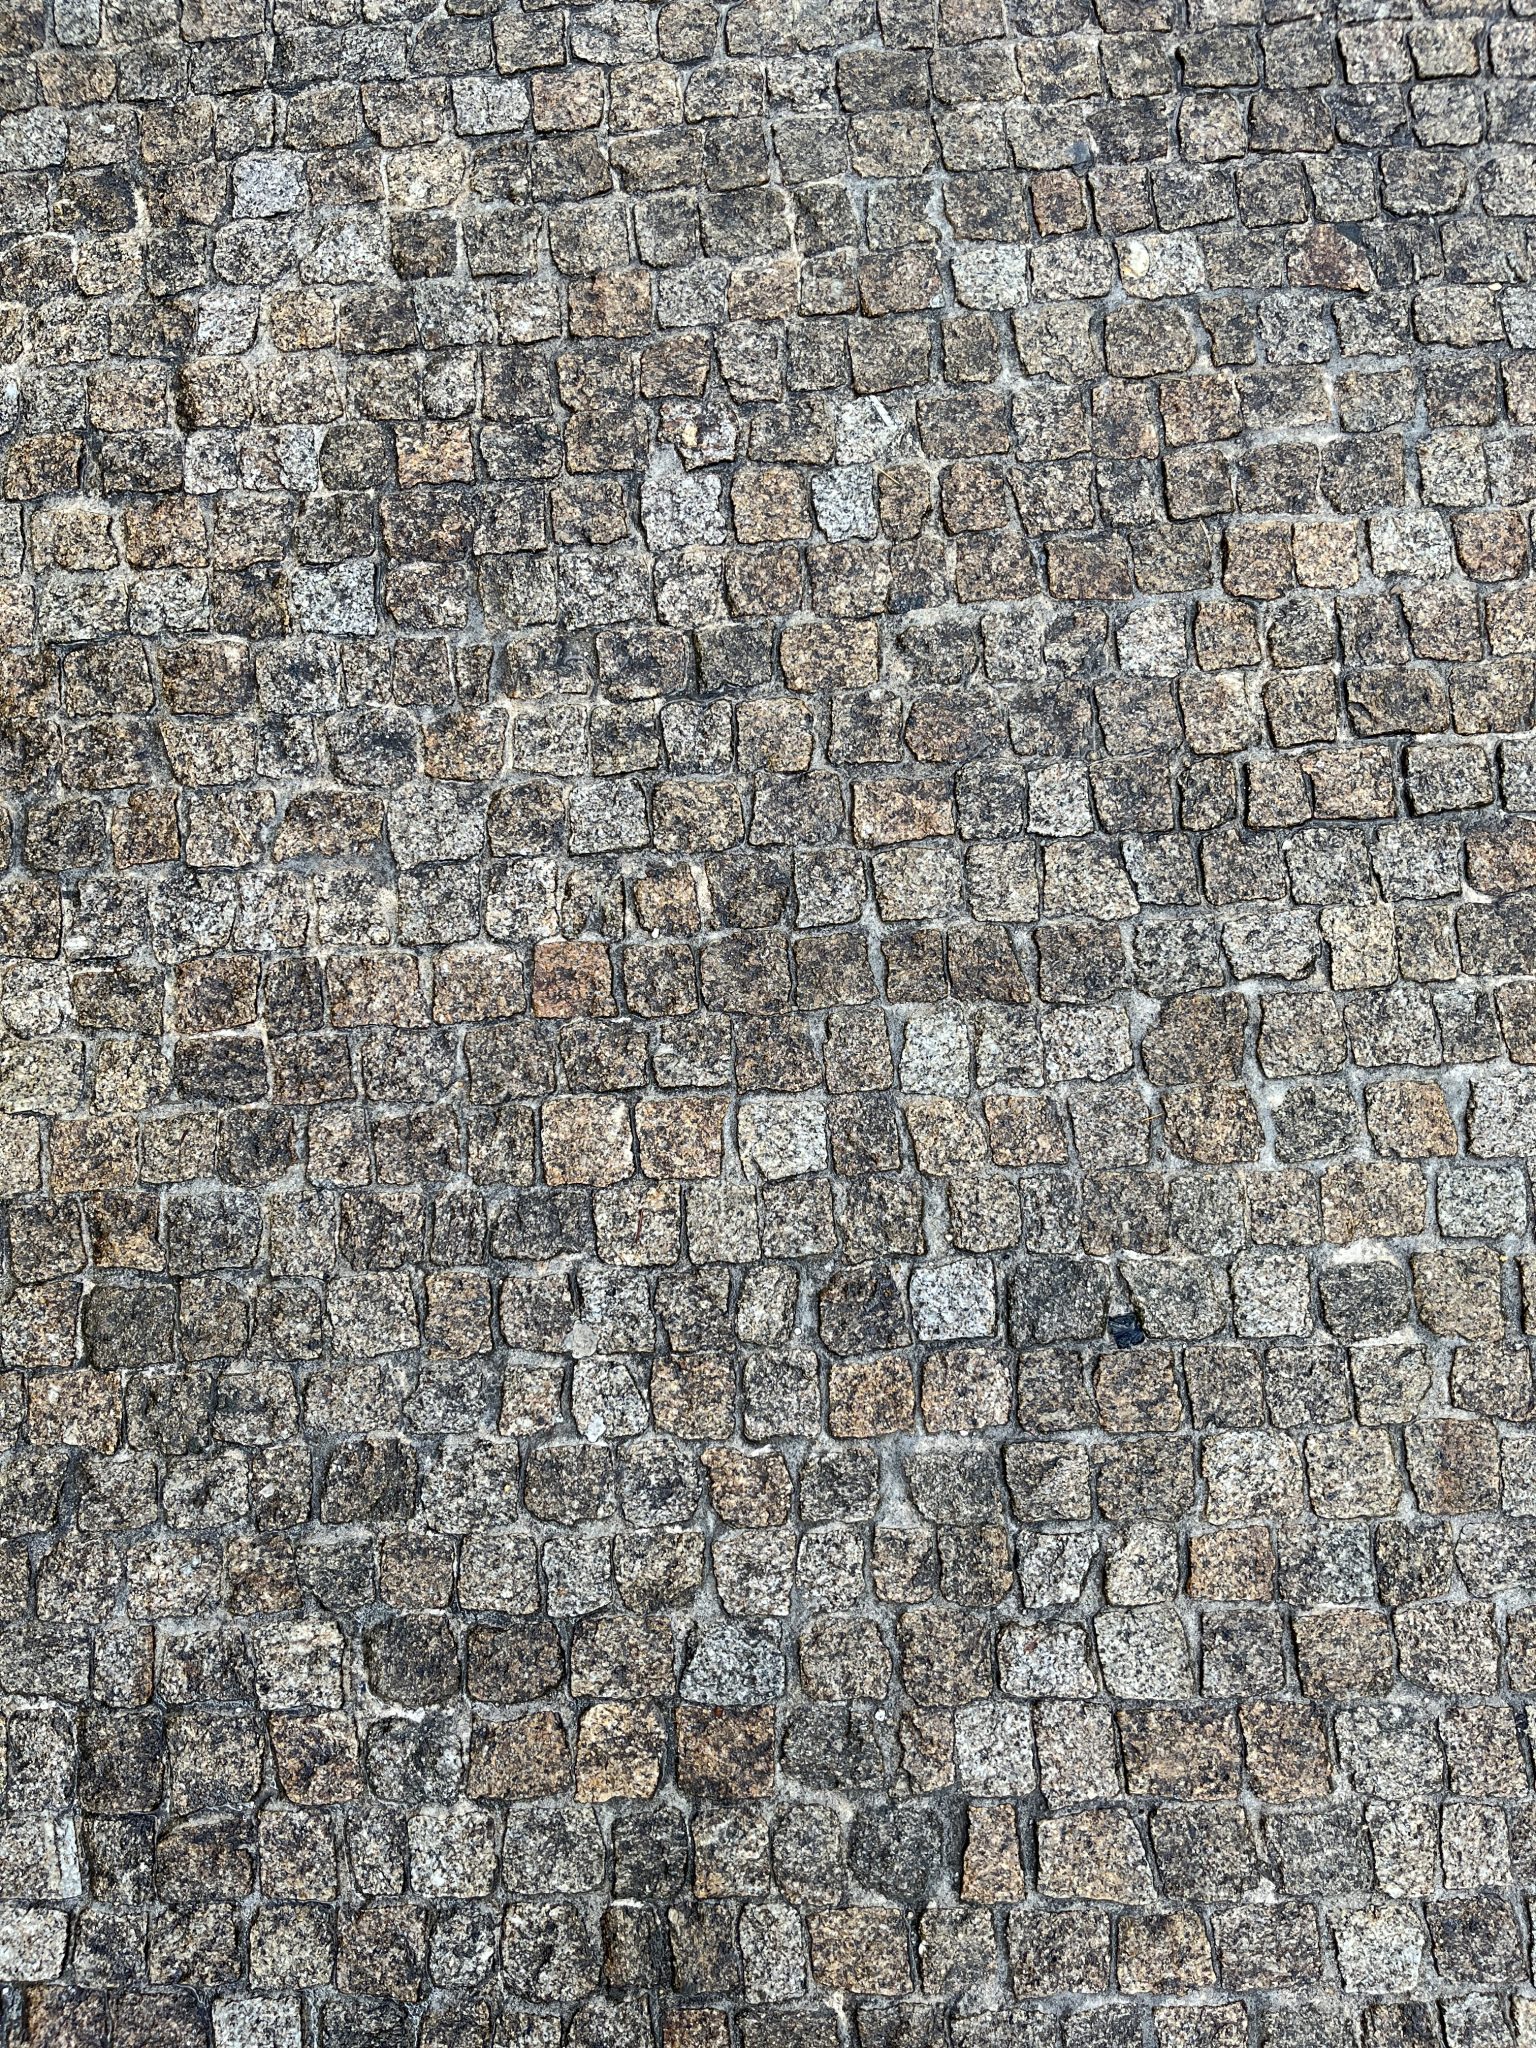 Small cobble stones, Porto, Portugal